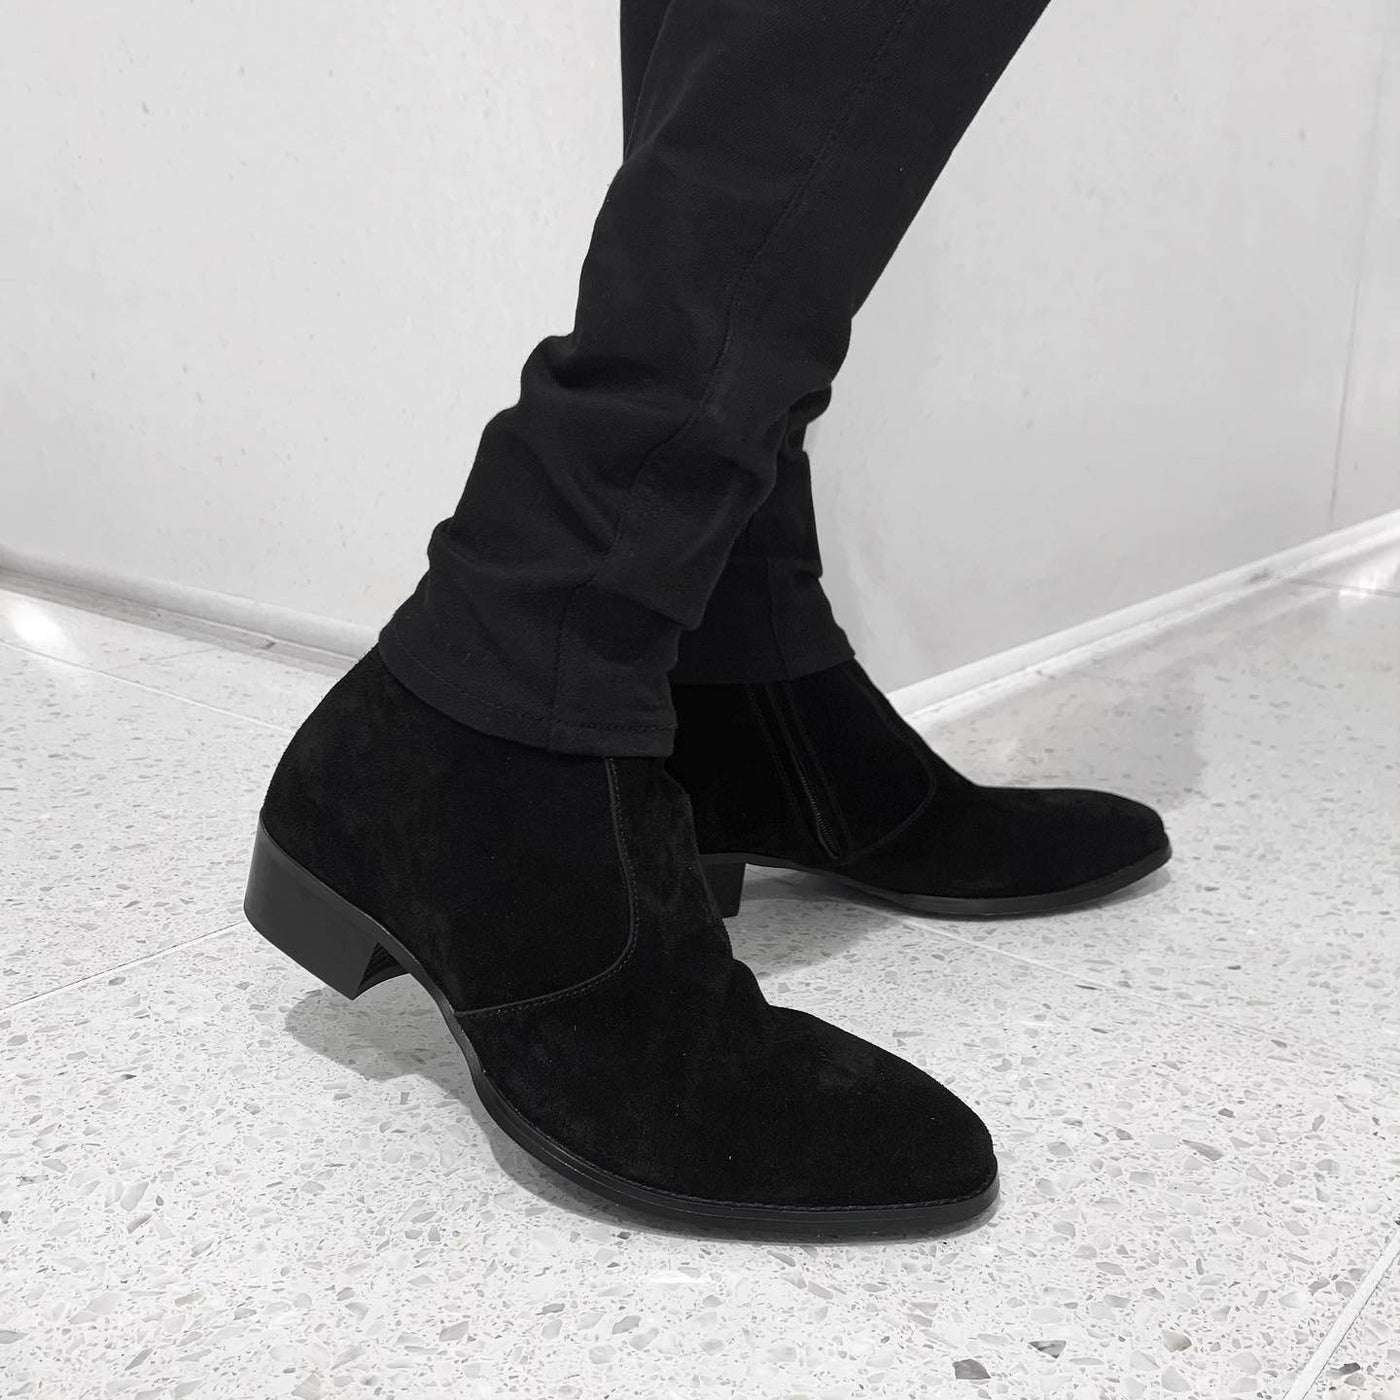 PANERO 40mm heel boots “Suede” (black)